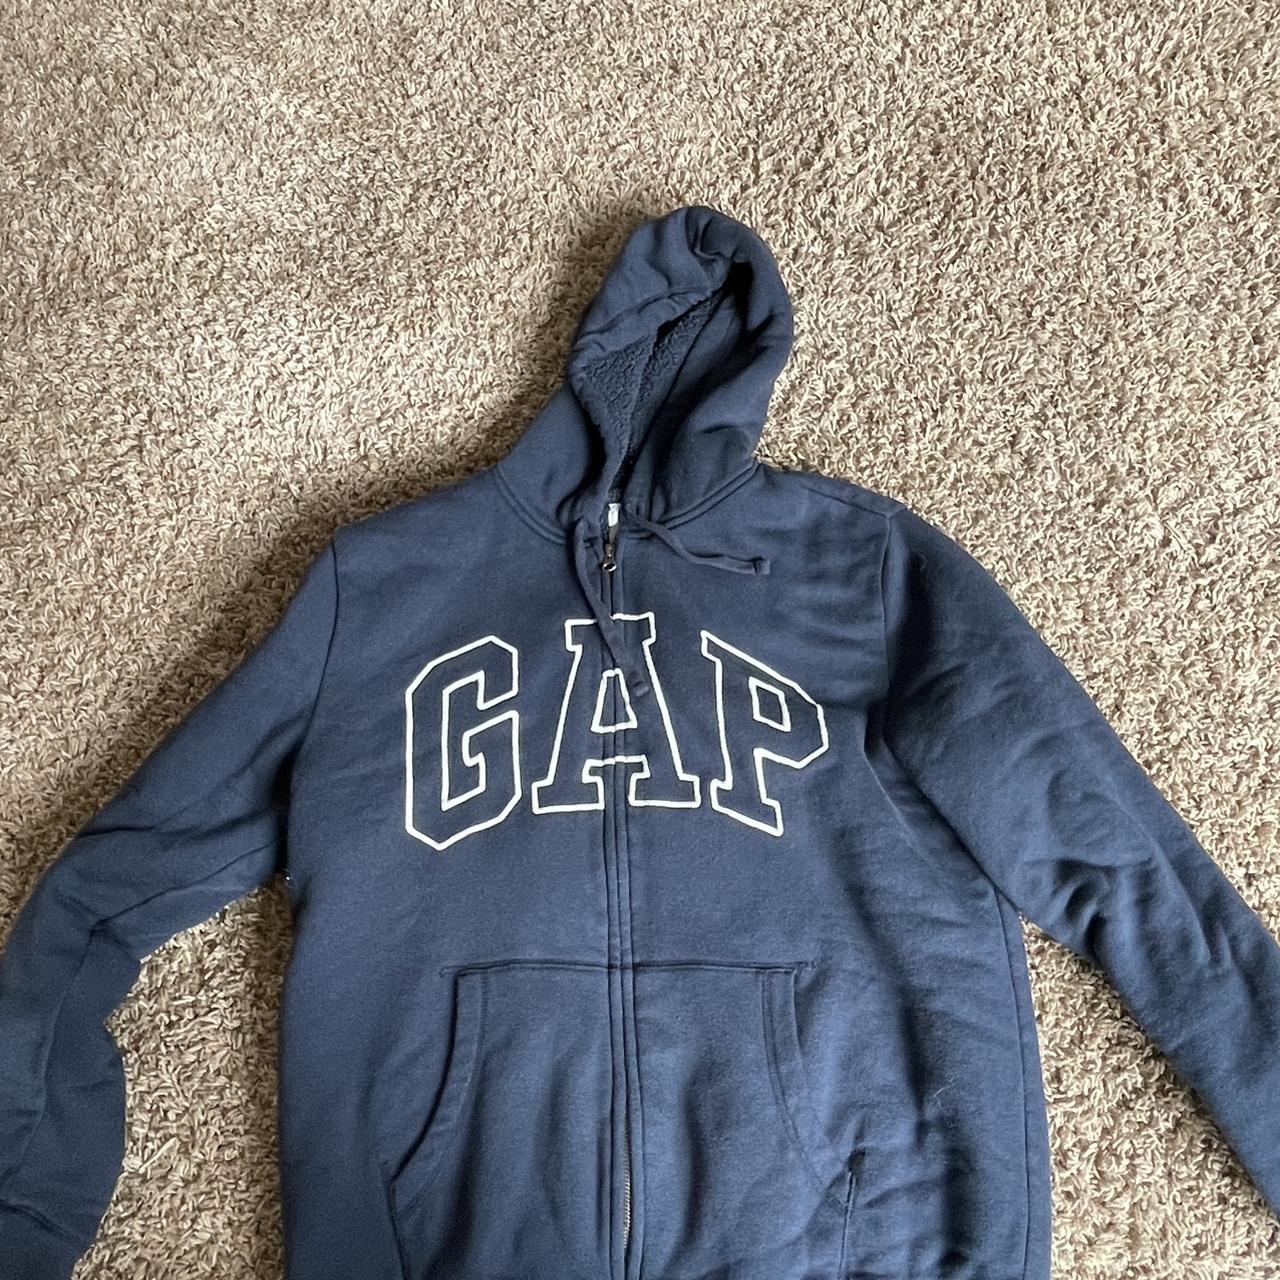 Gap fleece zip up. - Depop